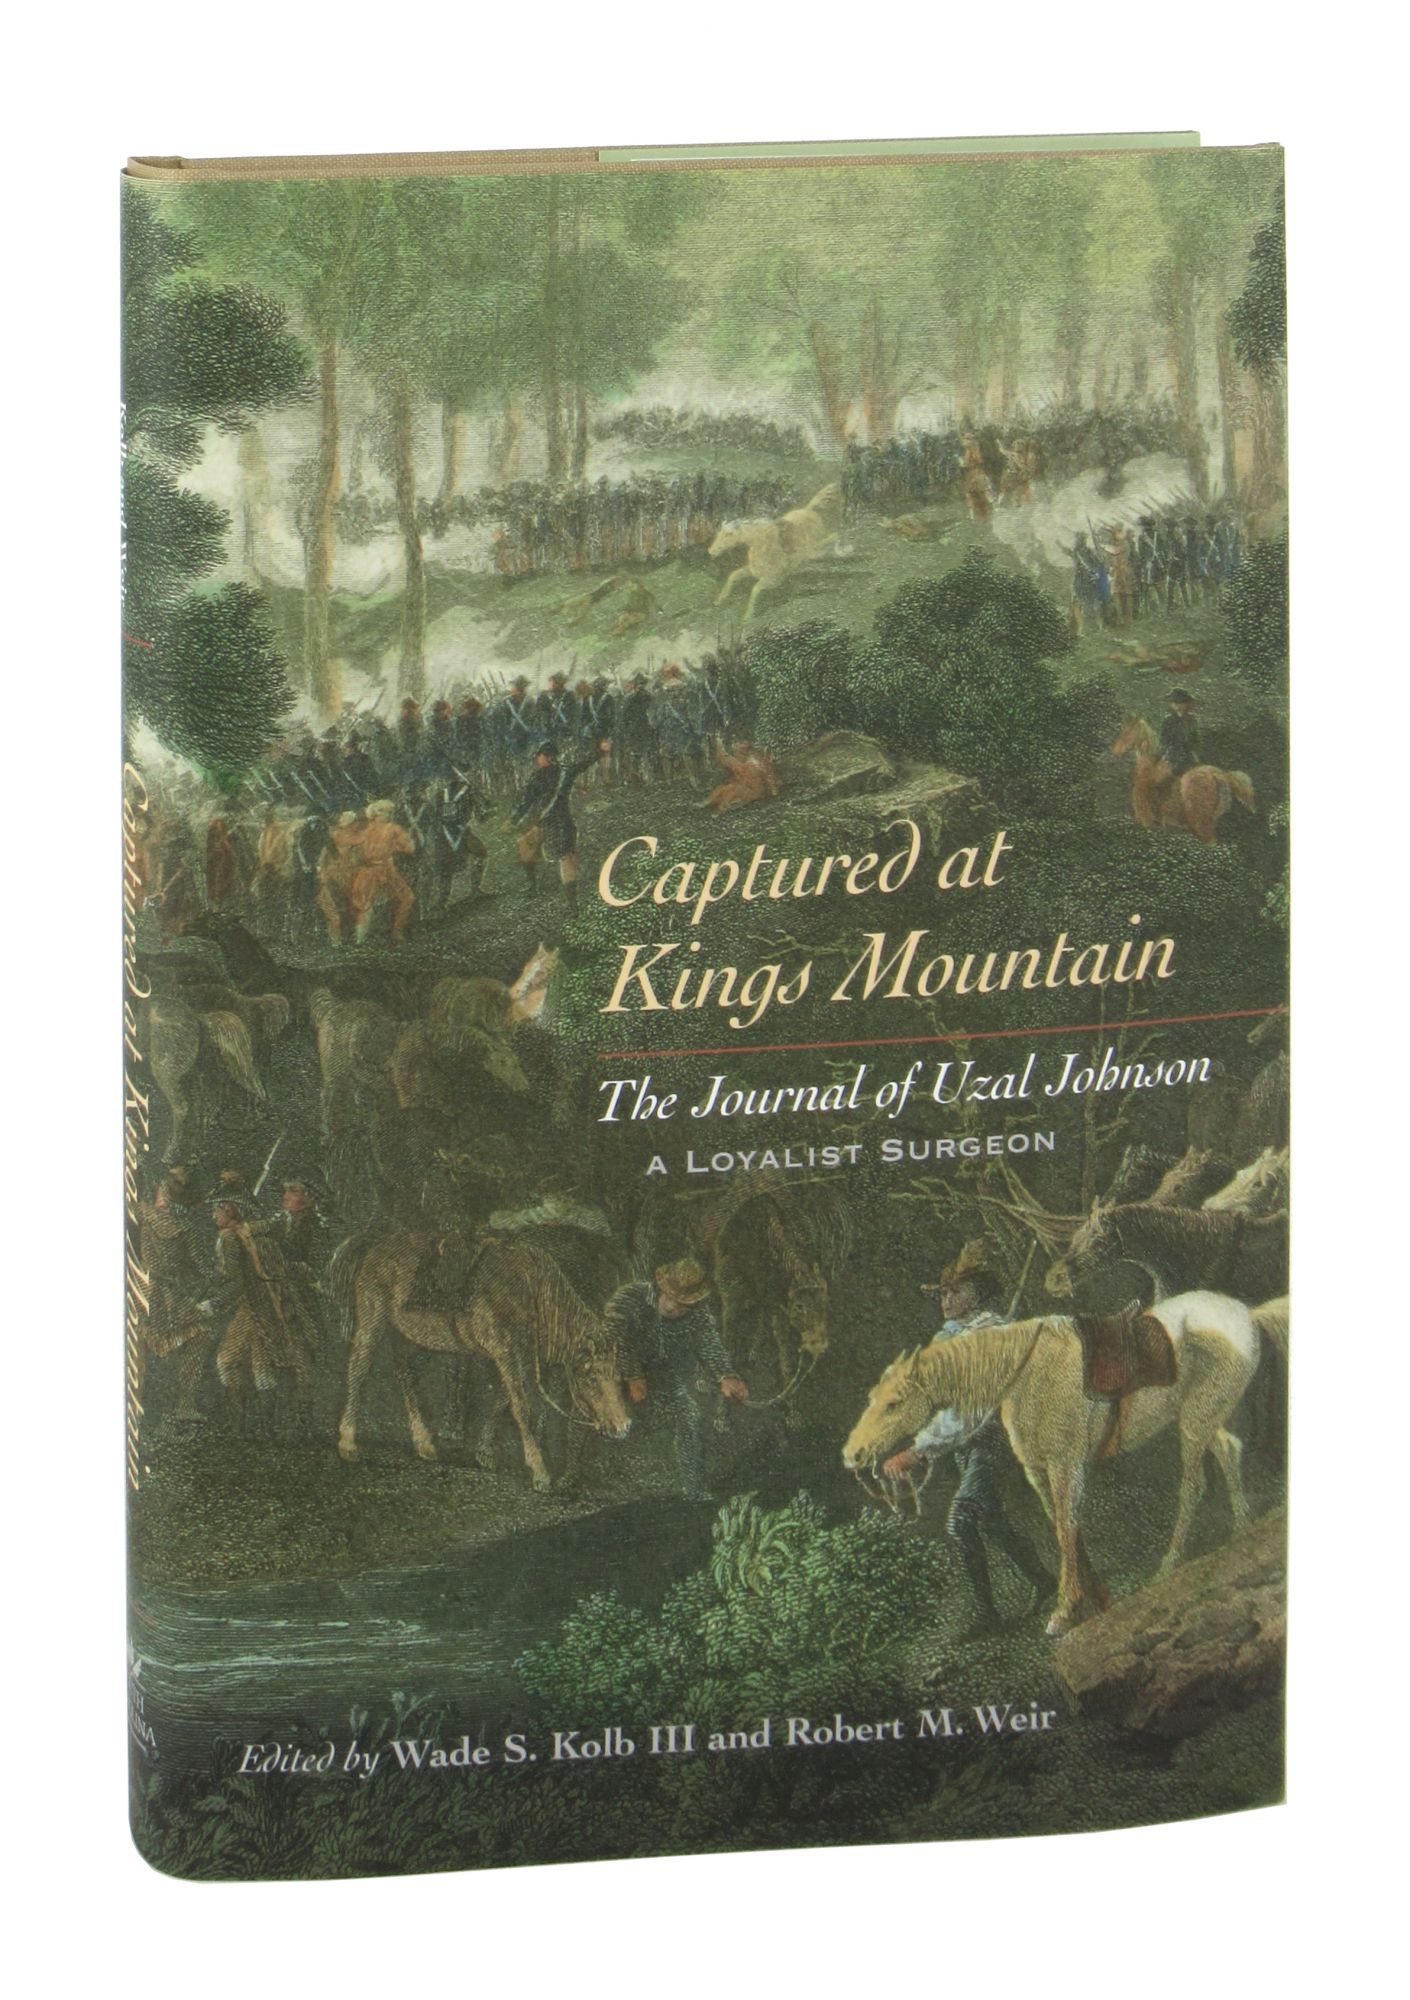 Captured at Kings Mountain: The Journal of Uzal Johnson, a Loyalist Surgeon - Wade S. Kolb III [ed.]; Robert M. Weir [ed.]; Anne H. Weir [asst.]